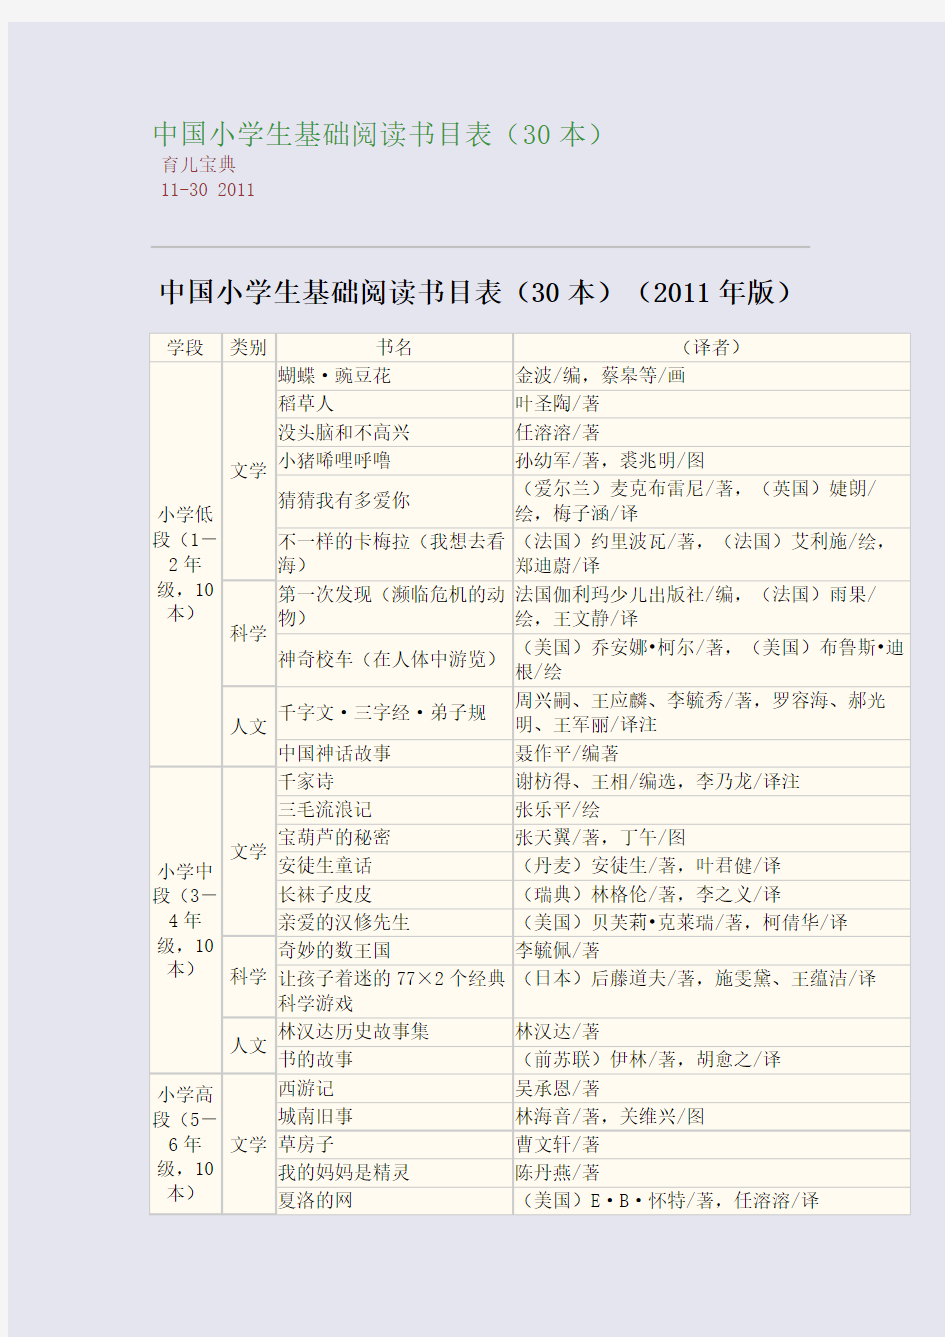 中国小学生基础阅读书目表(30本)